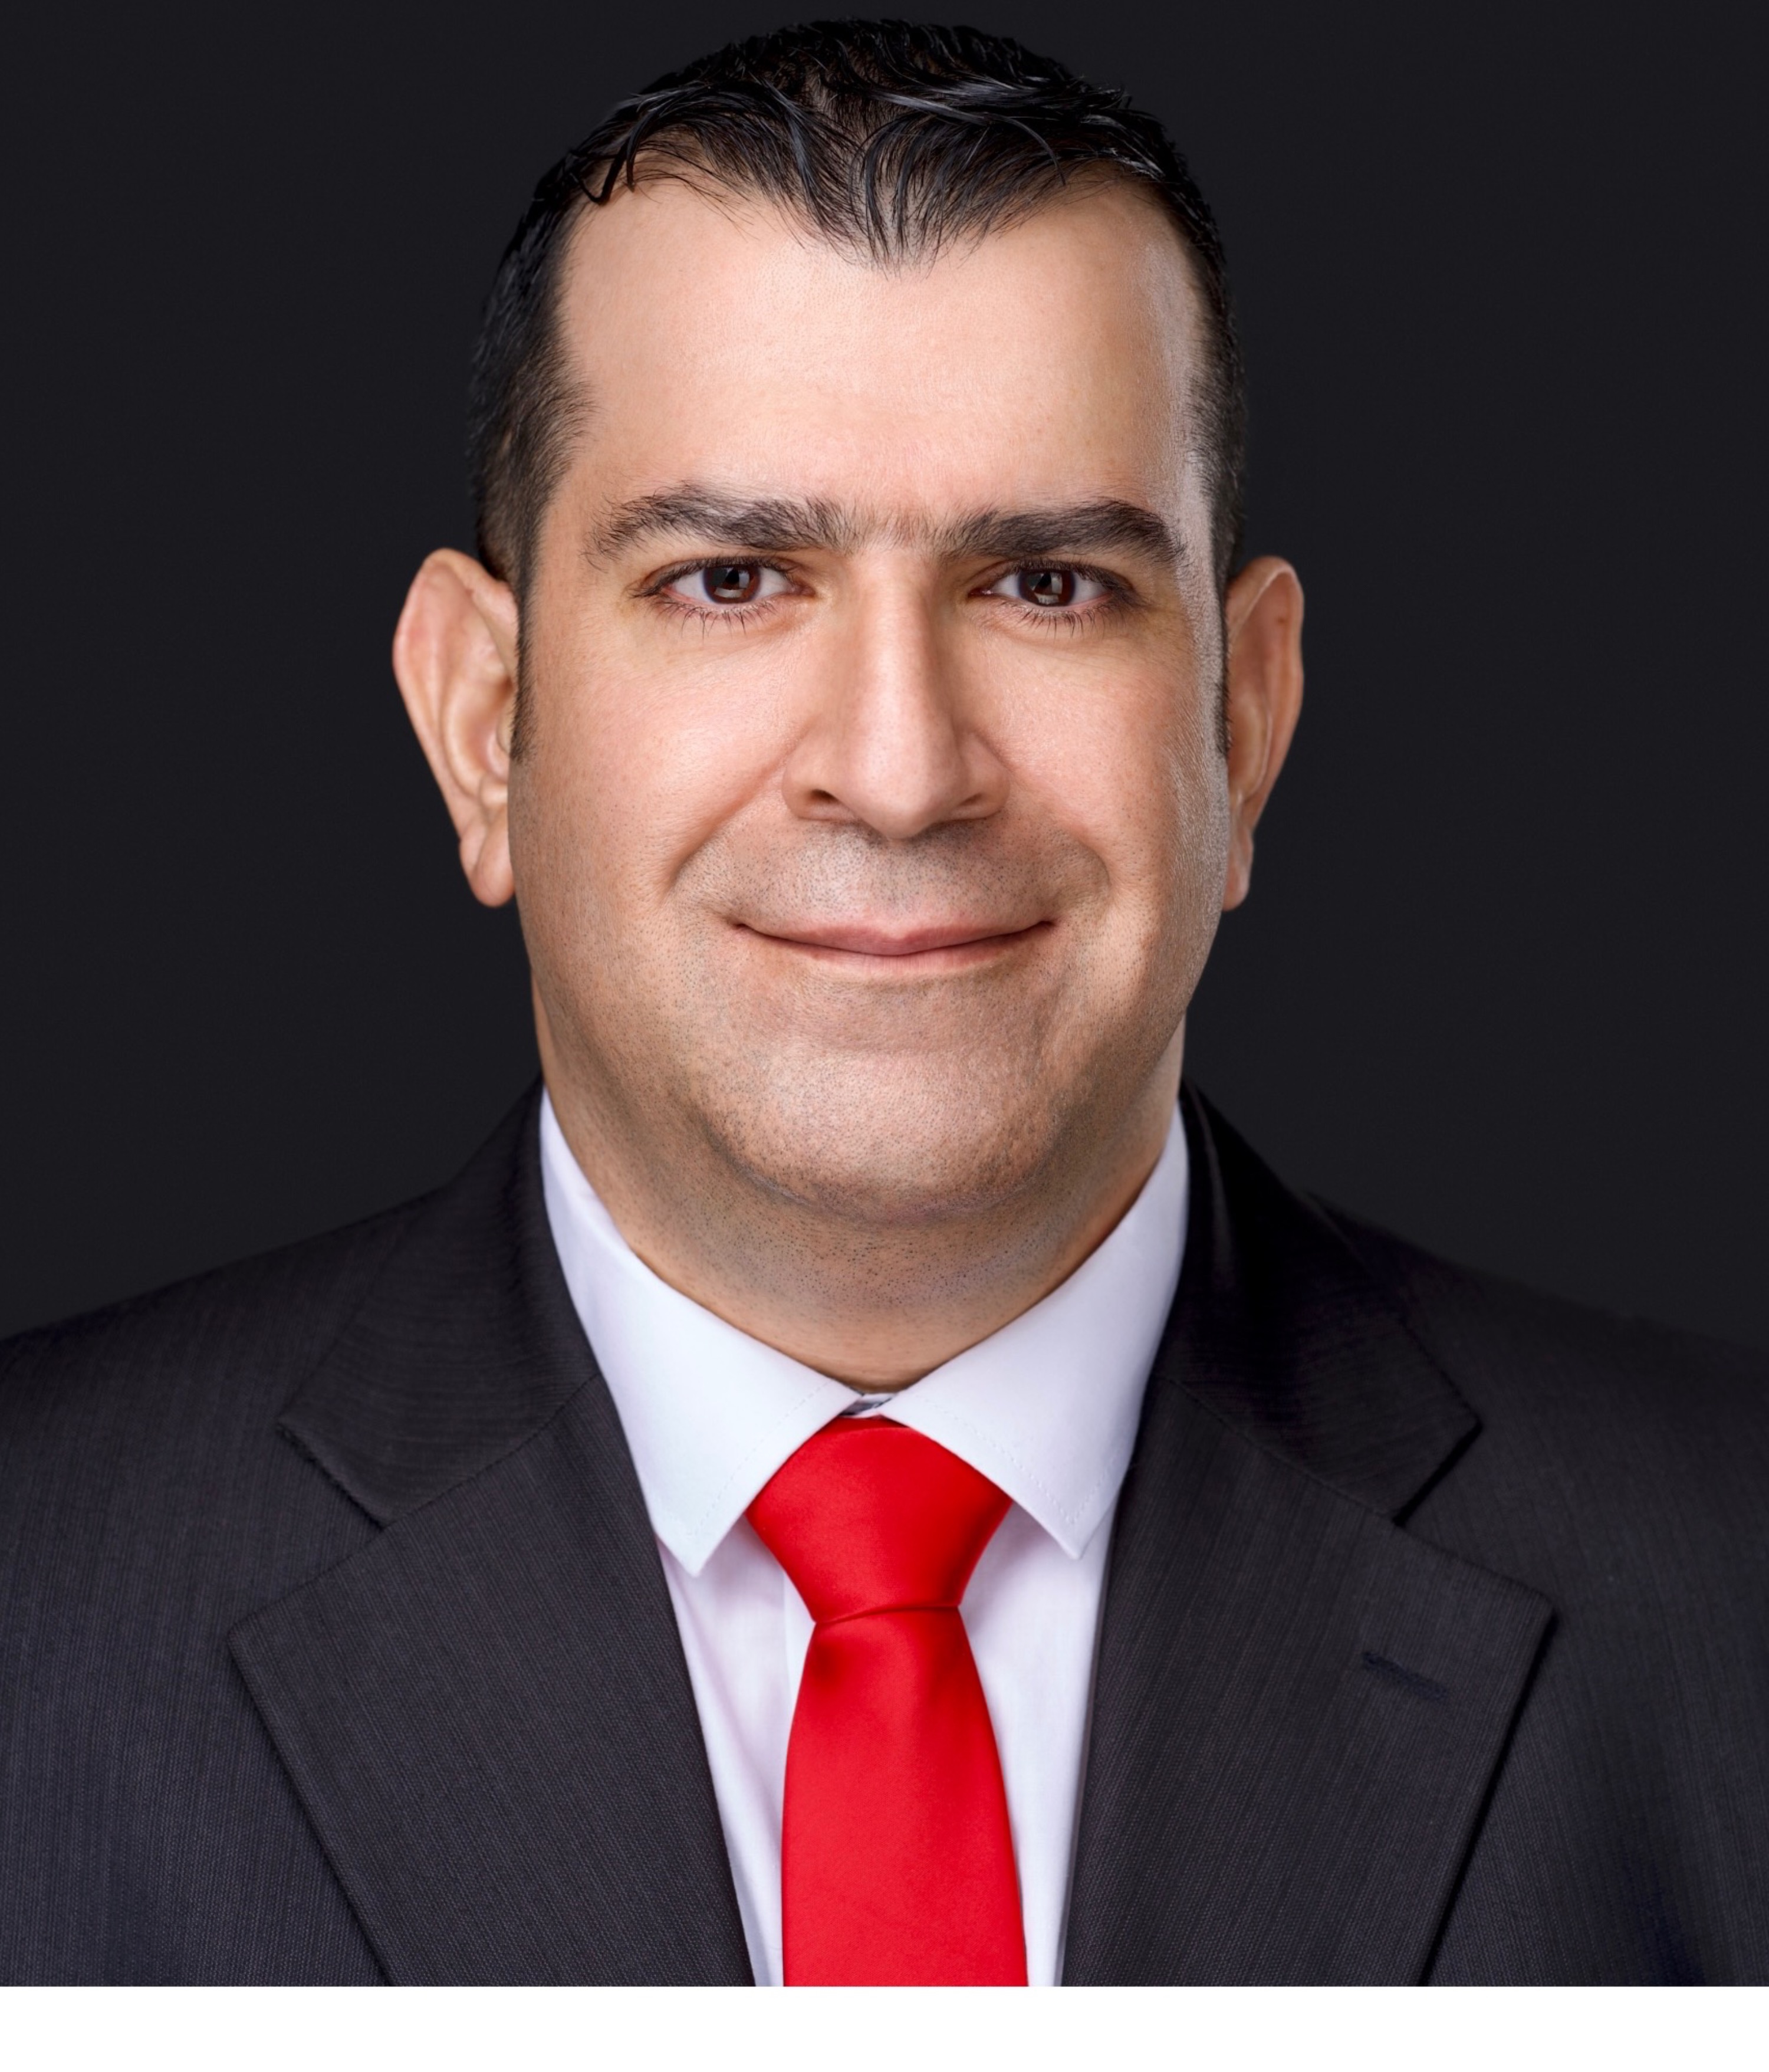 Hisham Helo Mroueh